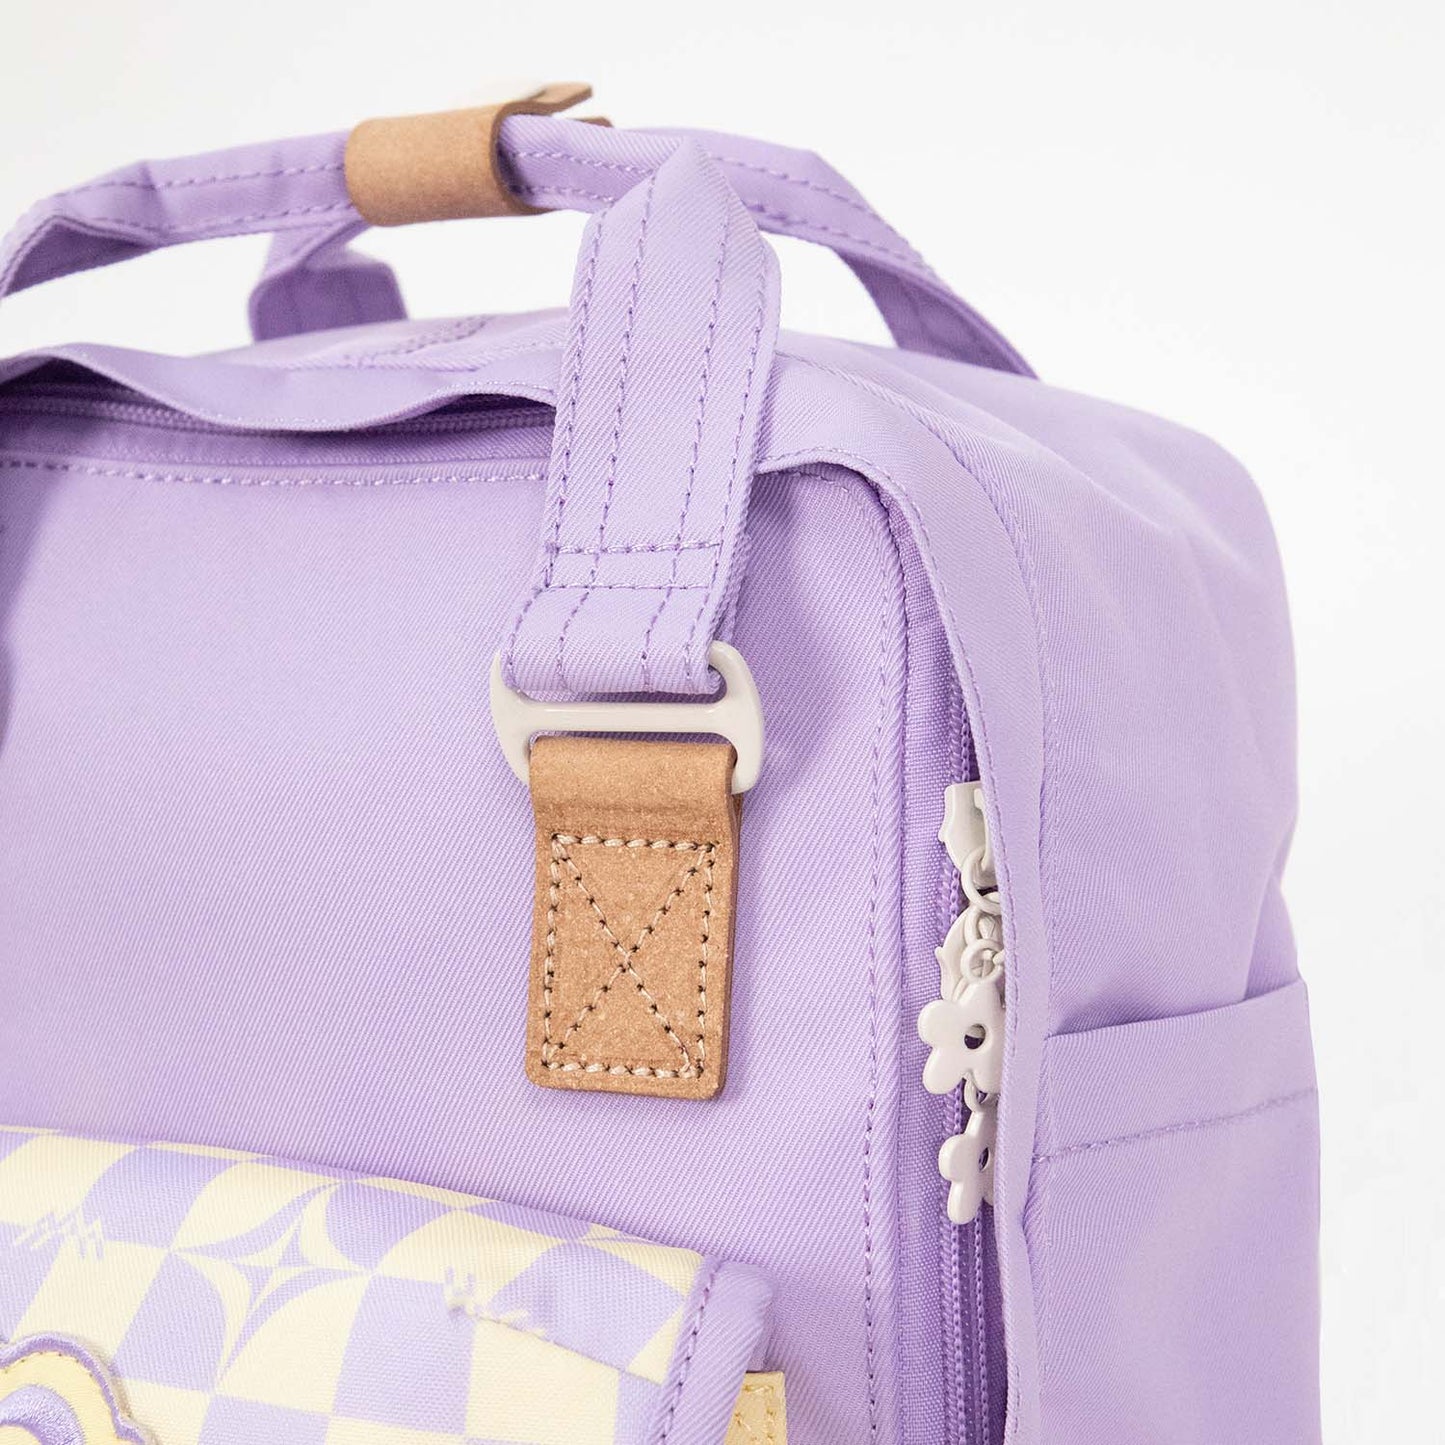 Macaroon Mini Kaleido Series Backpack